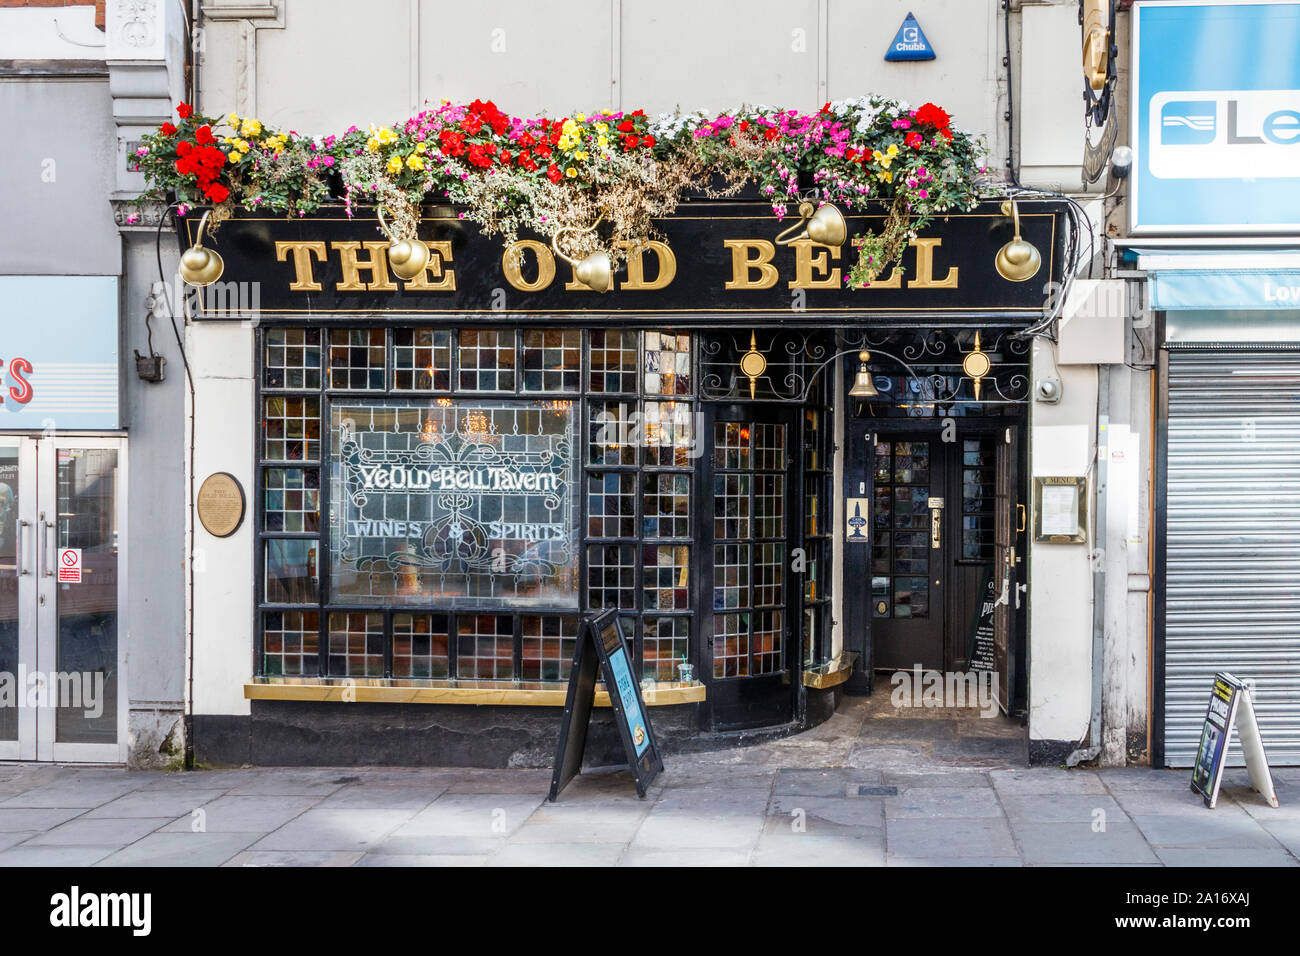 The Old Bell (Ye Olde Bell) public house in Fleet Street, London, UK Stock Photo